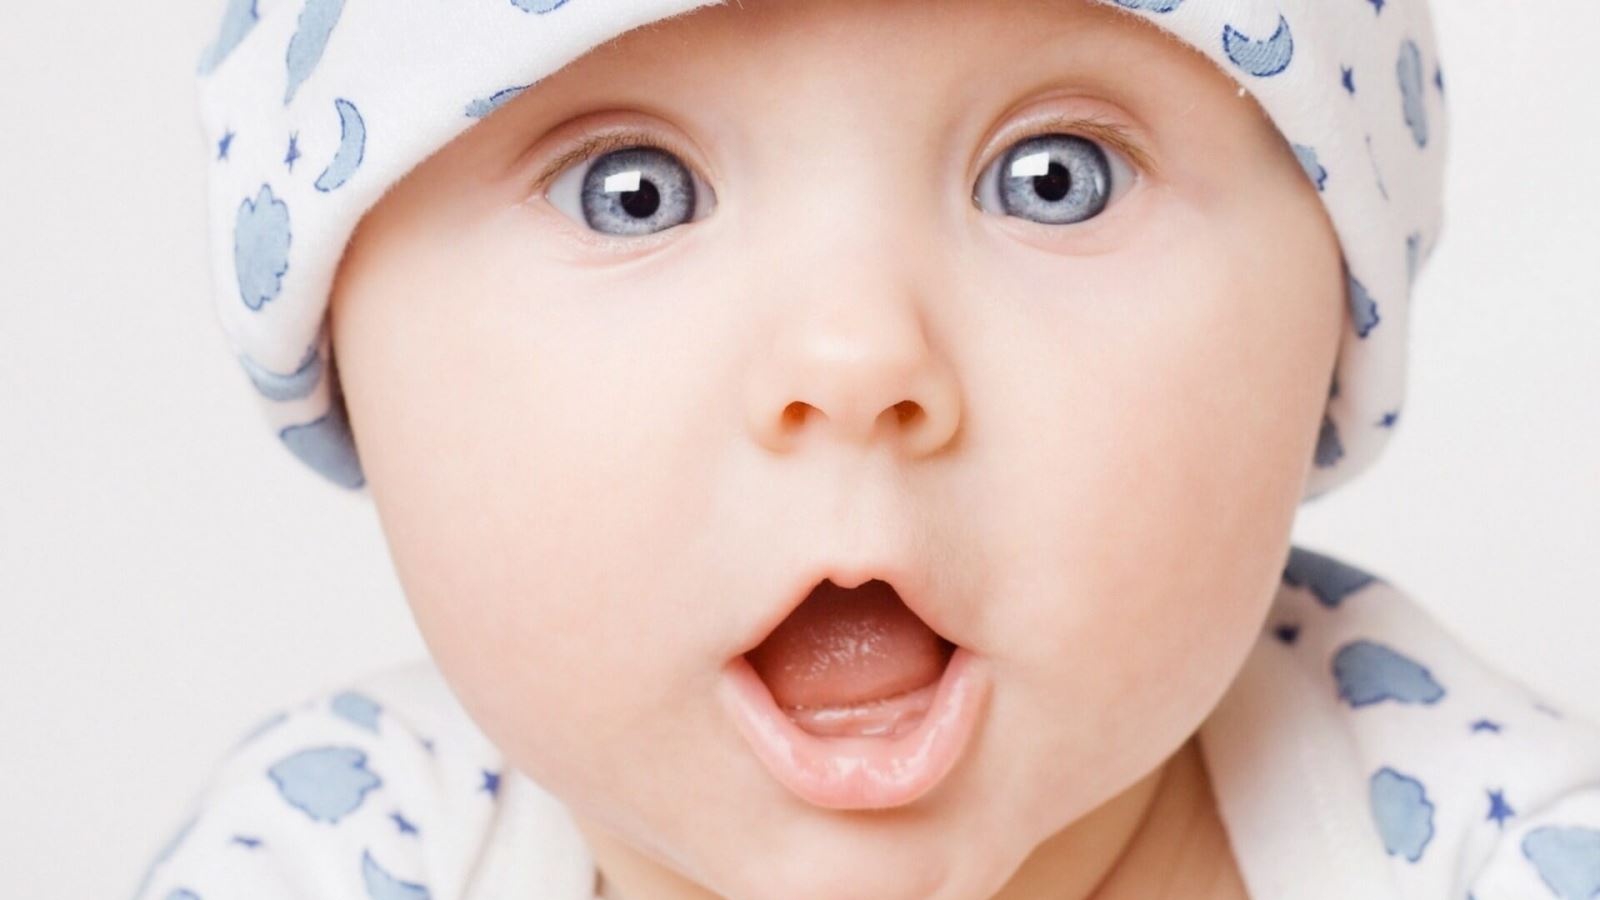 Khi nào thì mí mắt trẻ sơ sinh có thể lộ rõ 2 mí?